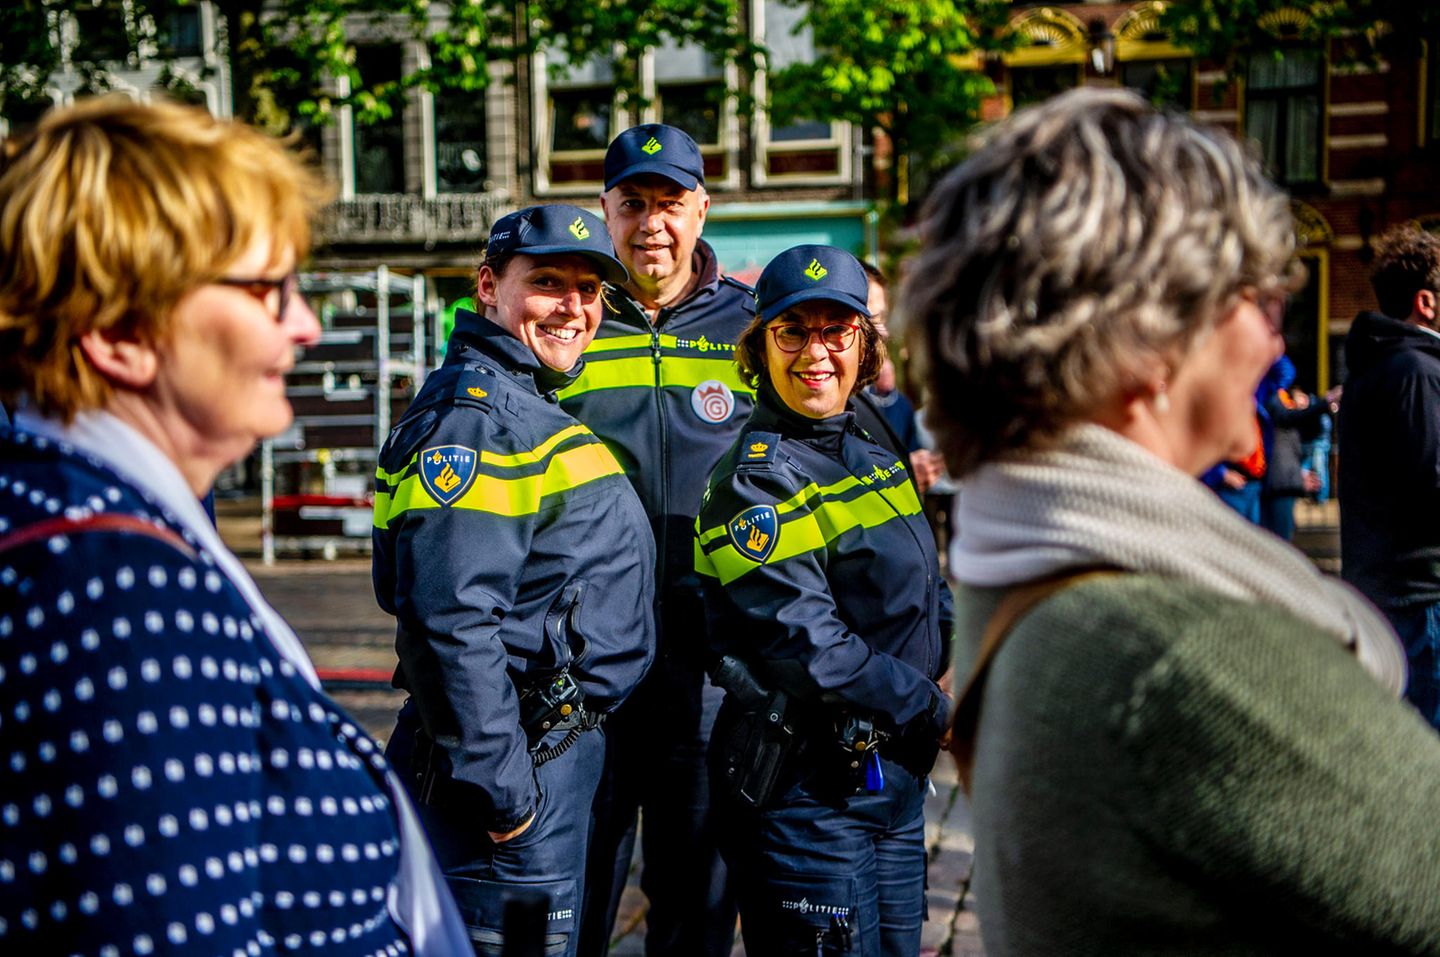 26. April 2018   Die Vorbereitungen in Groningen für den morgigen Königstag  laufen auf Hochtouren. Hoffen wir, dass die Polizei nicht viel zu tun haben wird und weiter so fröhlich lächeln kann.